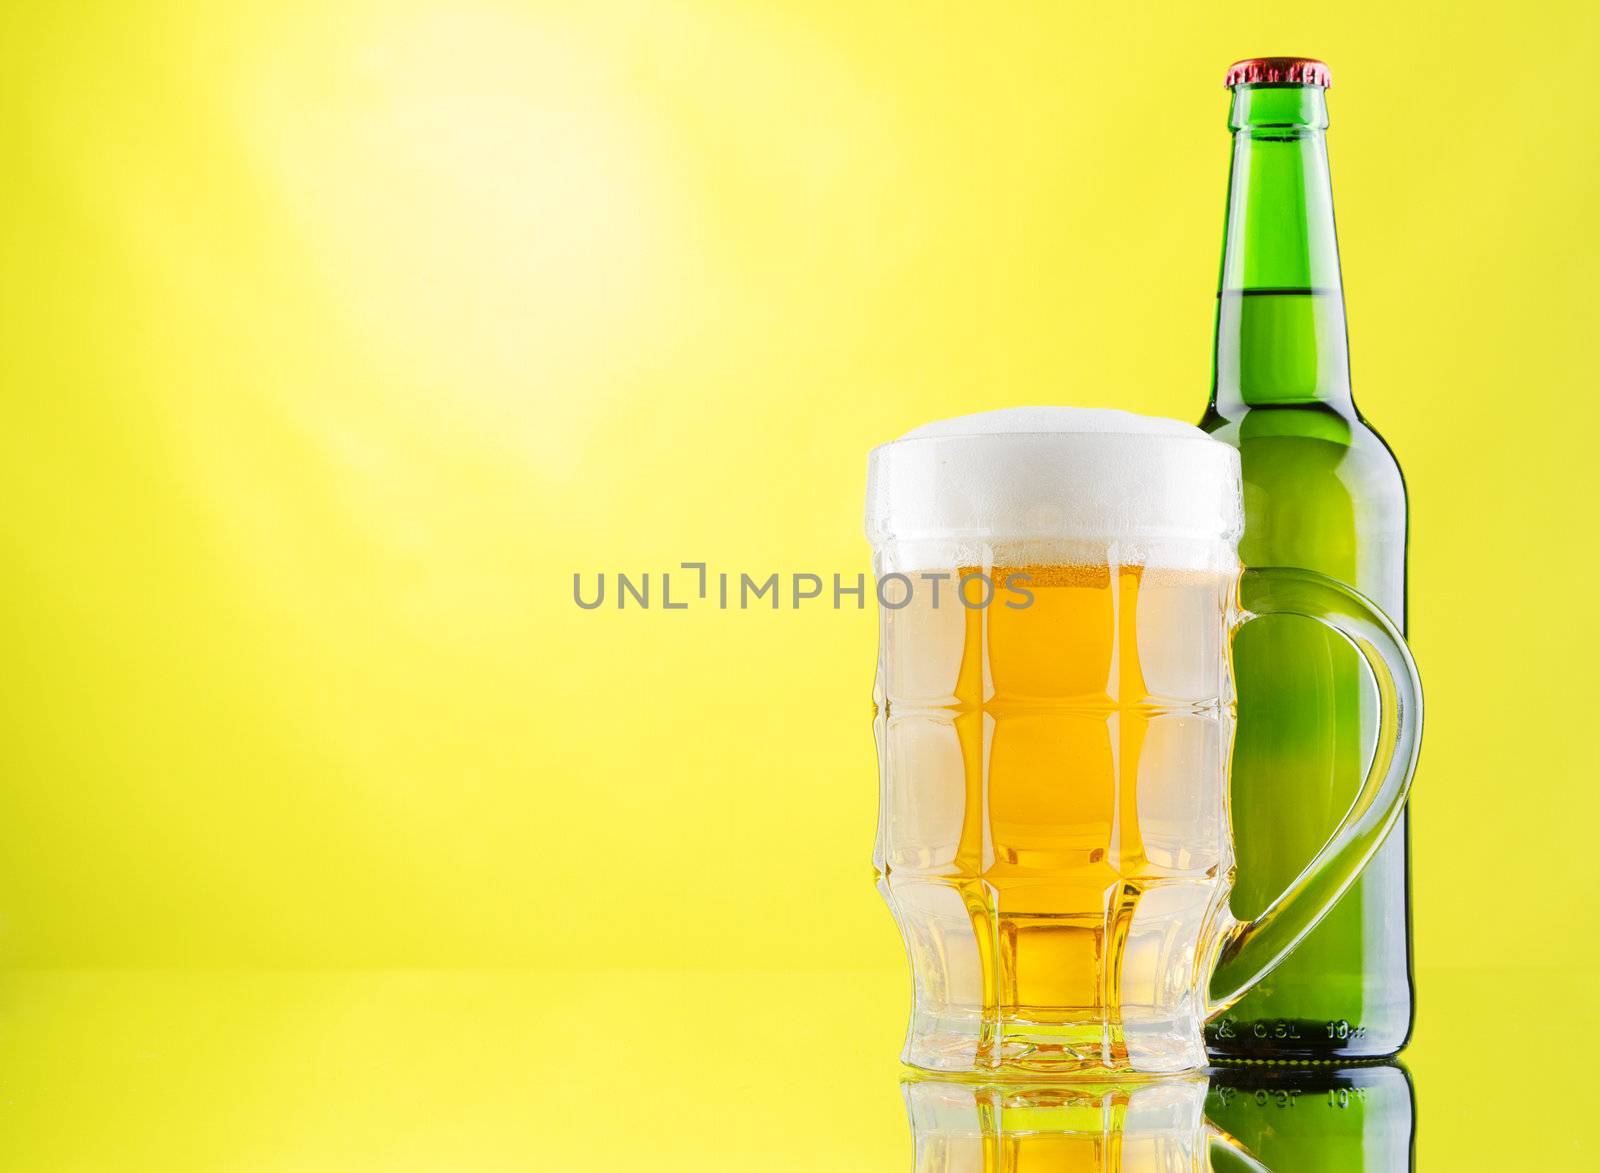 Beer mug and bottles on yellow background by Gdolgikh